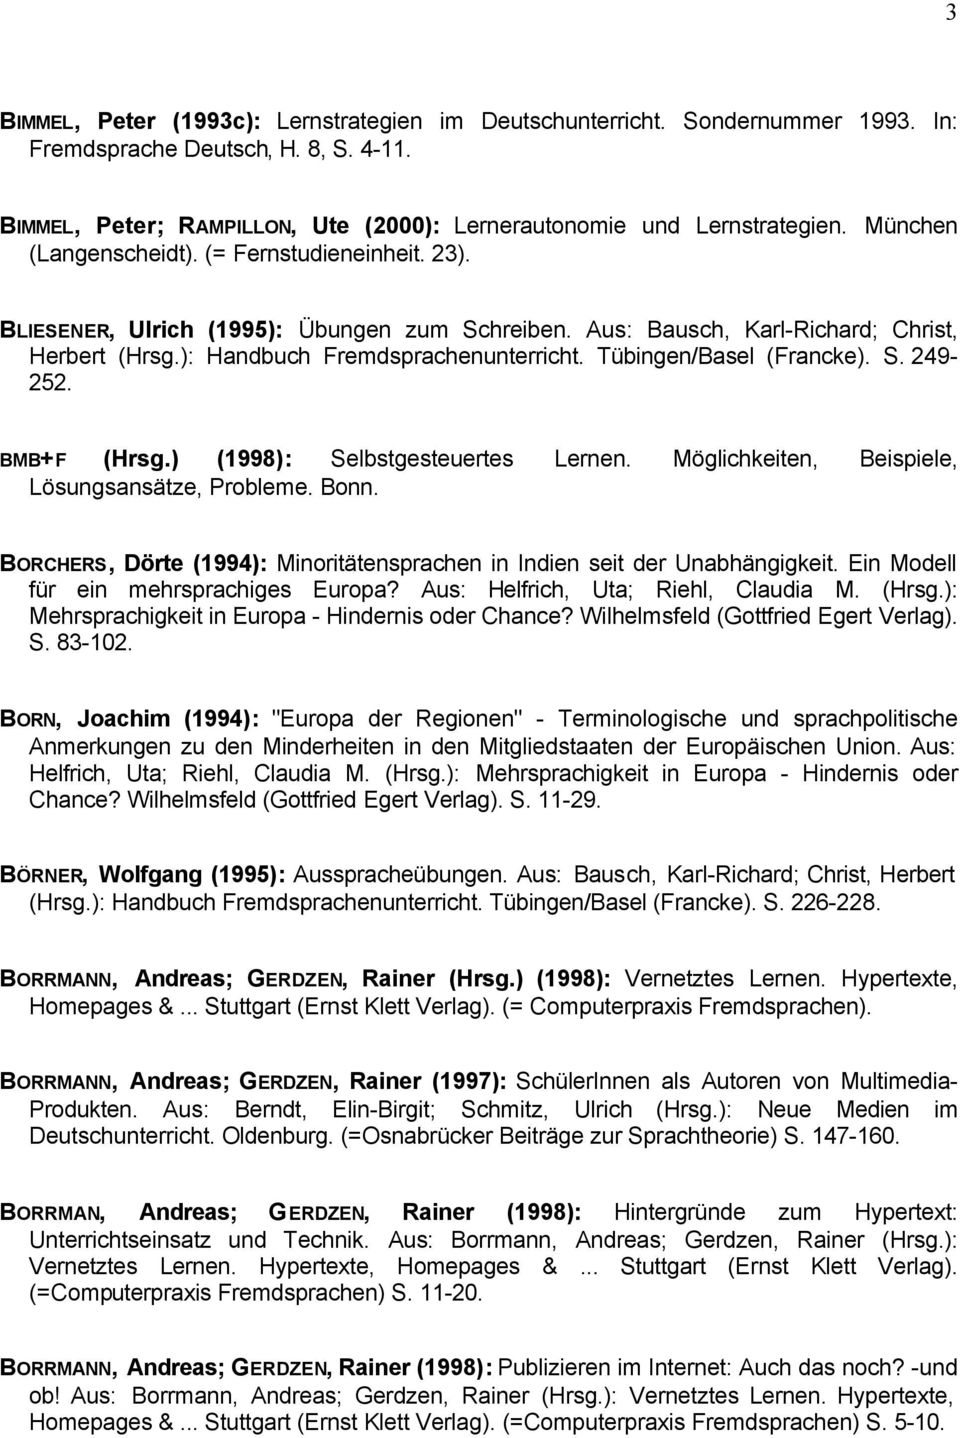 Tübingen/Basel (Francke). S. 249-252. BMB+F (Hrsg.) (1998): Selbstgesteuertes Lernen. Möglichkeiten, Beispiele, Lösungsansätze, Probleme. Bonn.